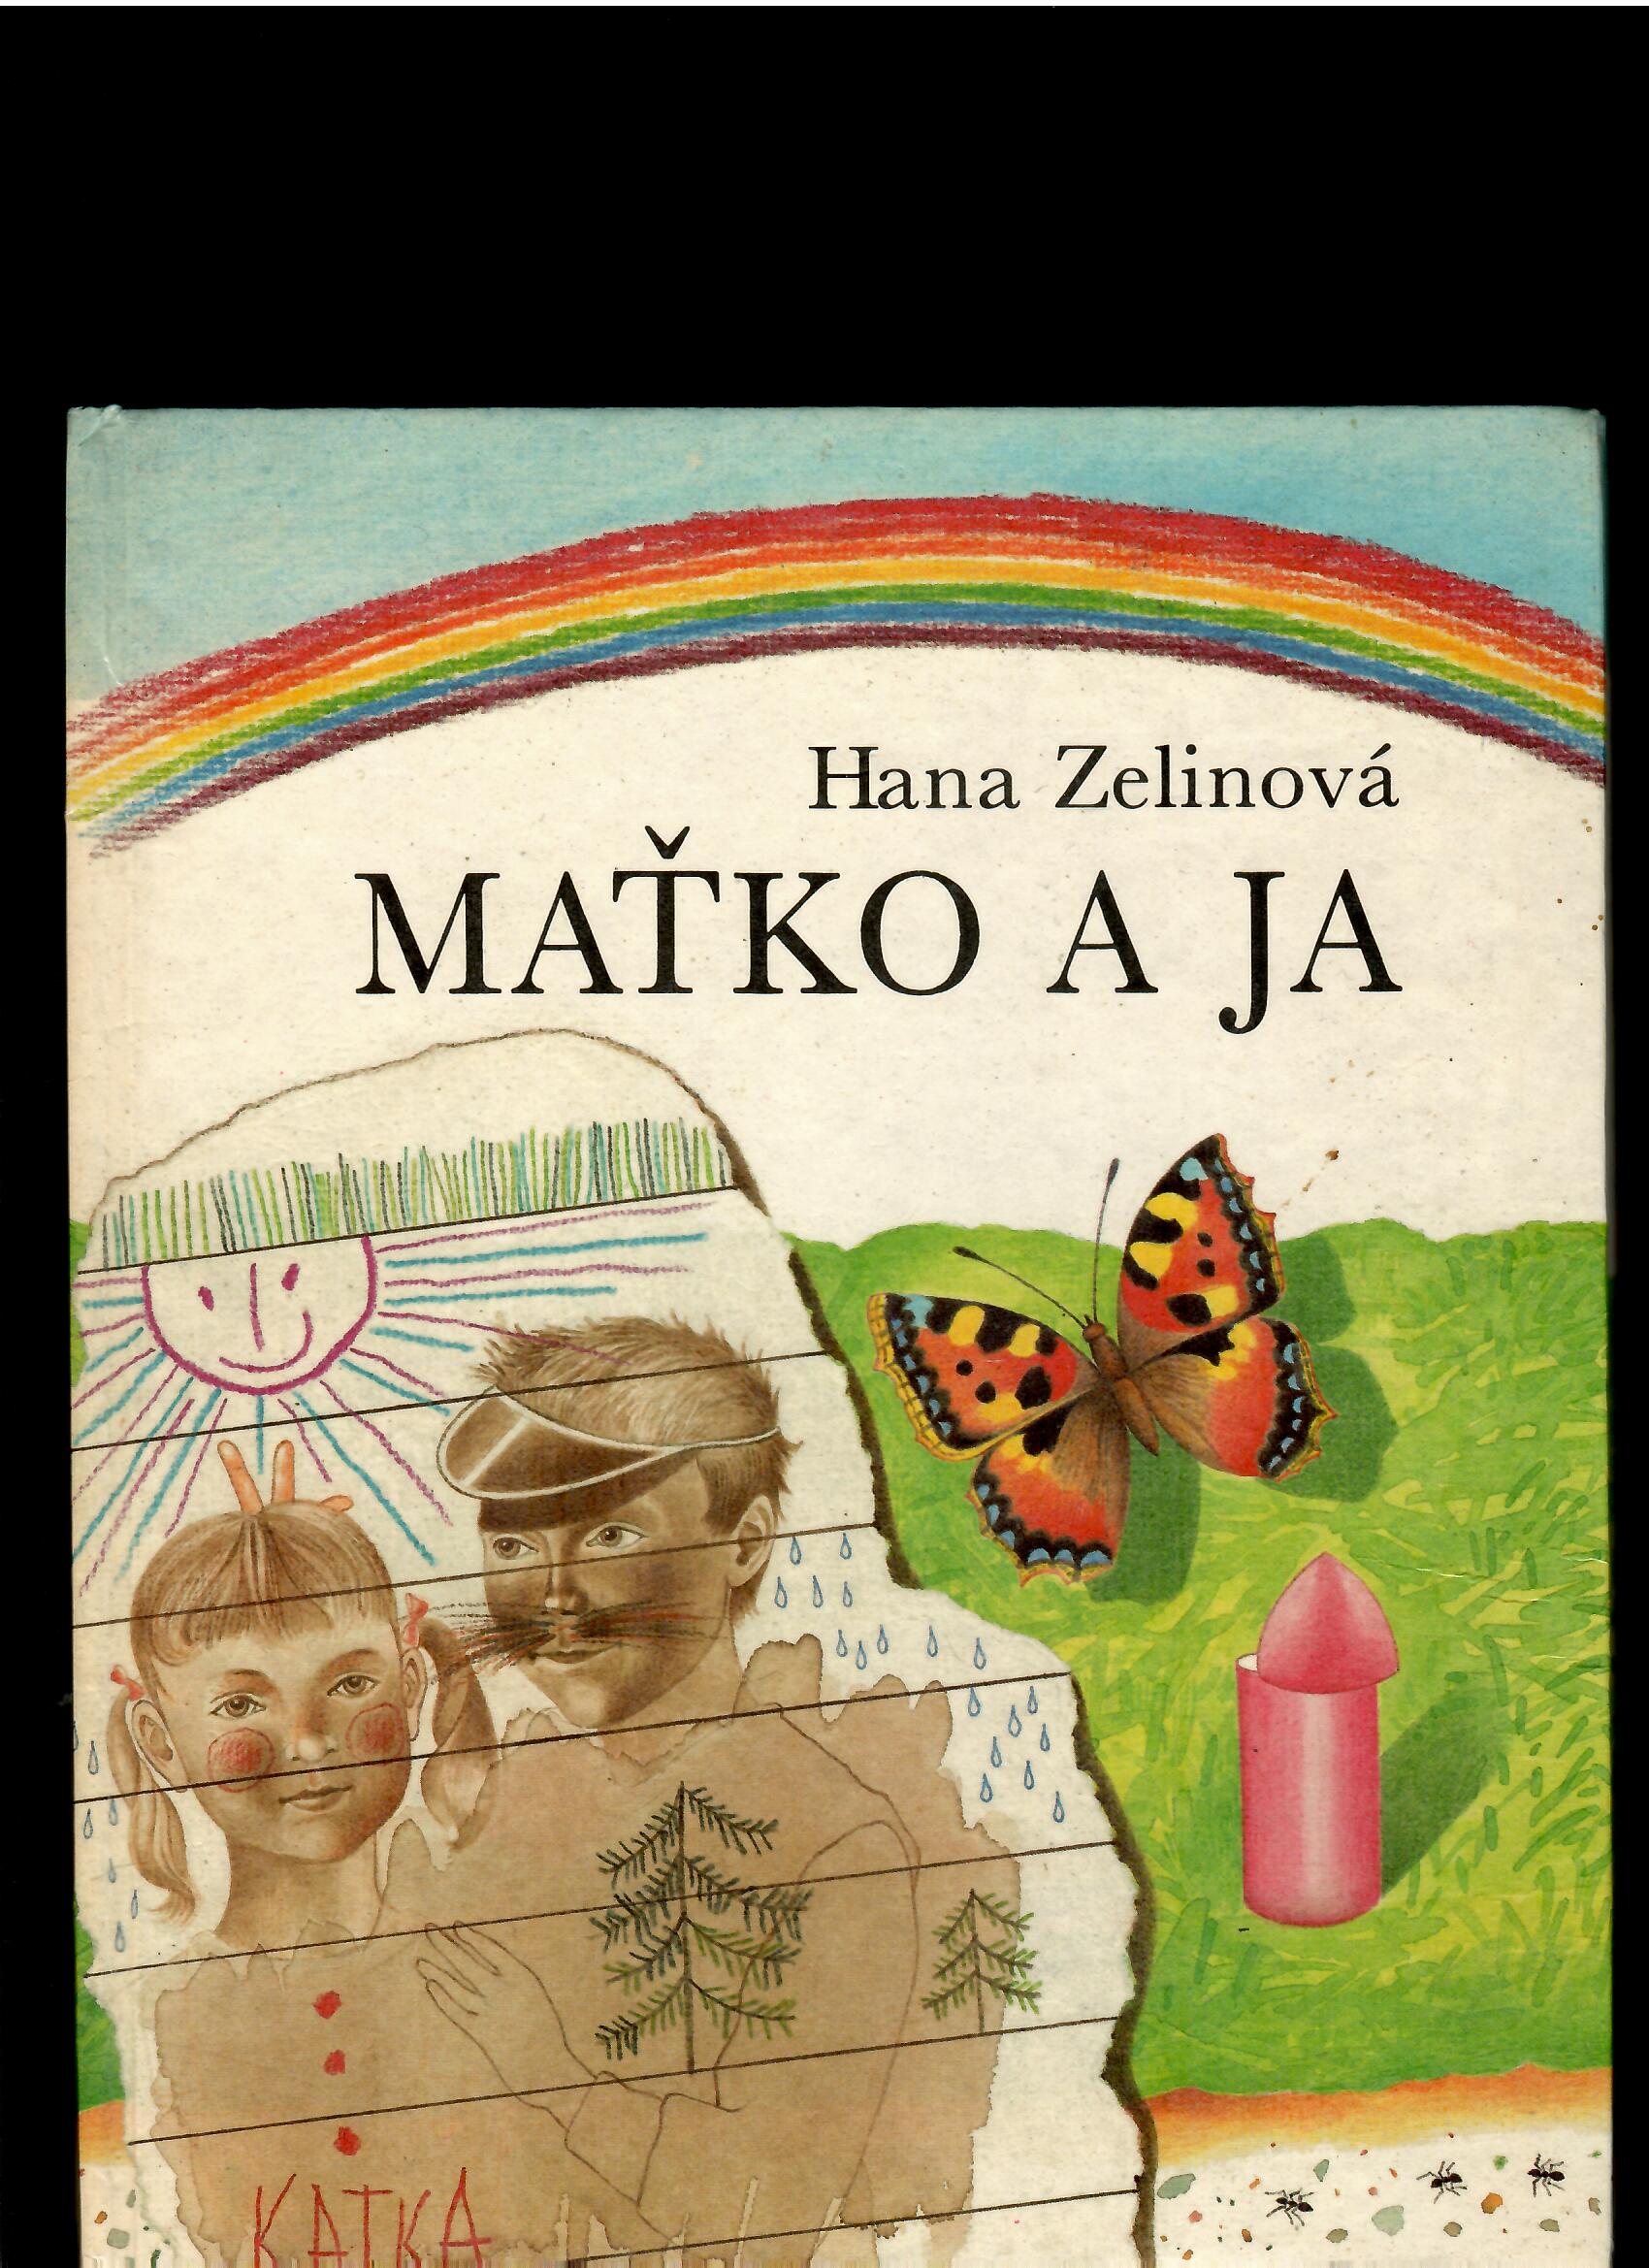 Hana Zelinová: Maťko a ja /il. Dušan Nágel/